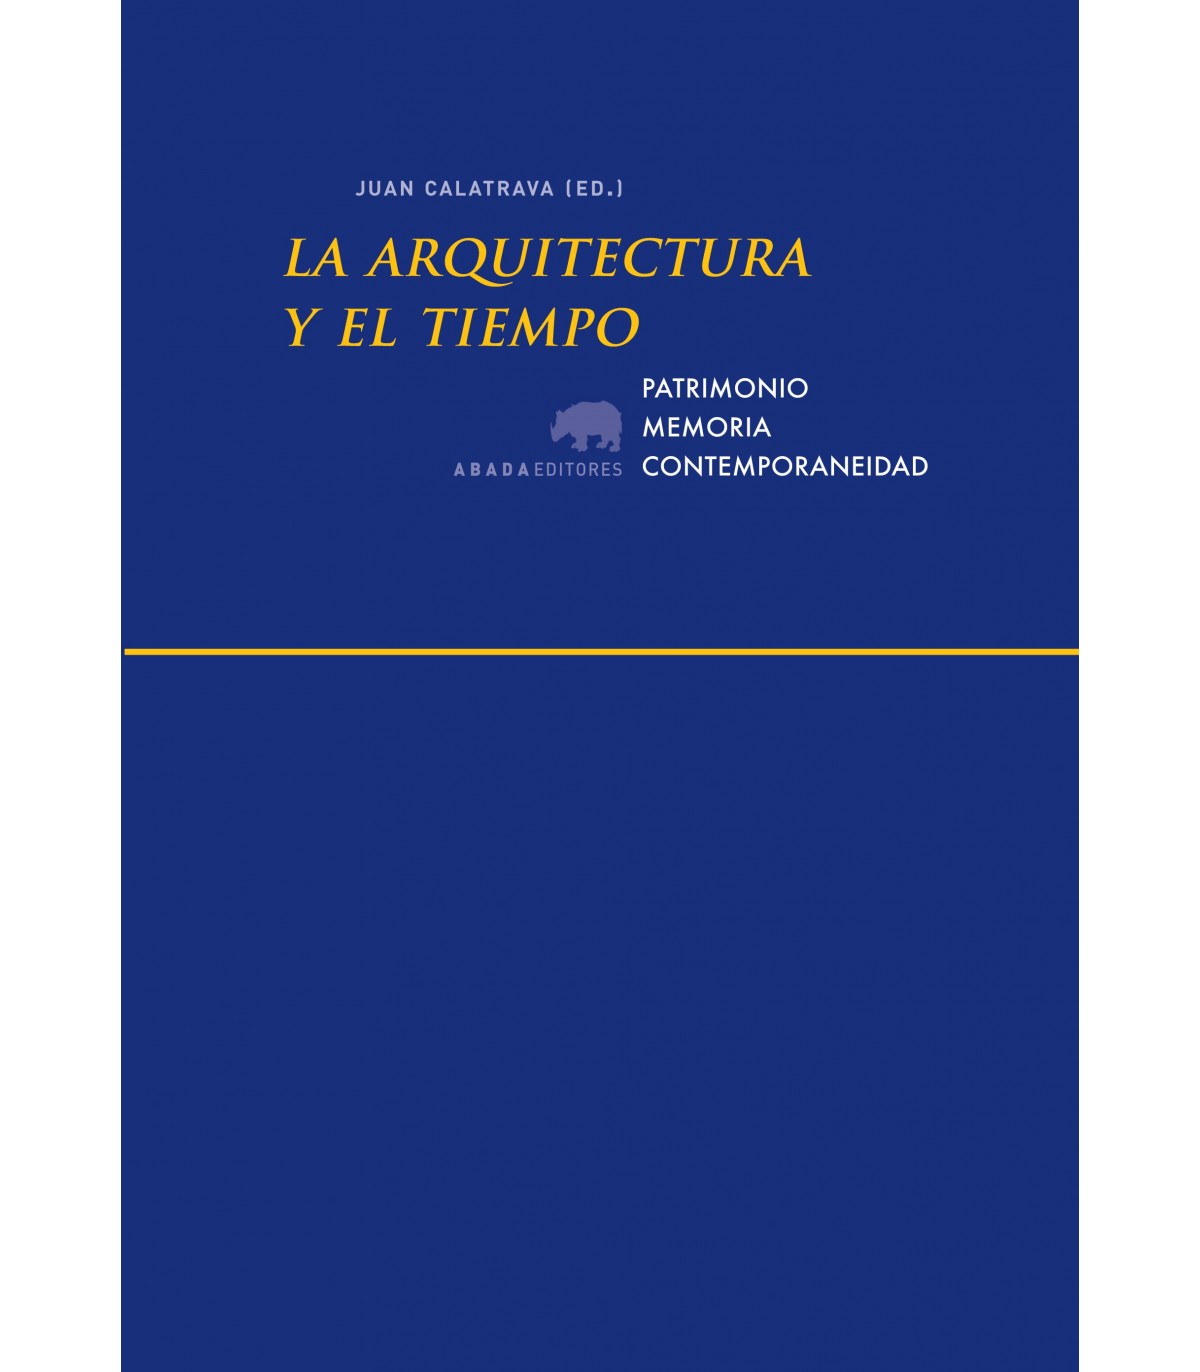 Imagen de portada del libro La arquitectura y el tiempo